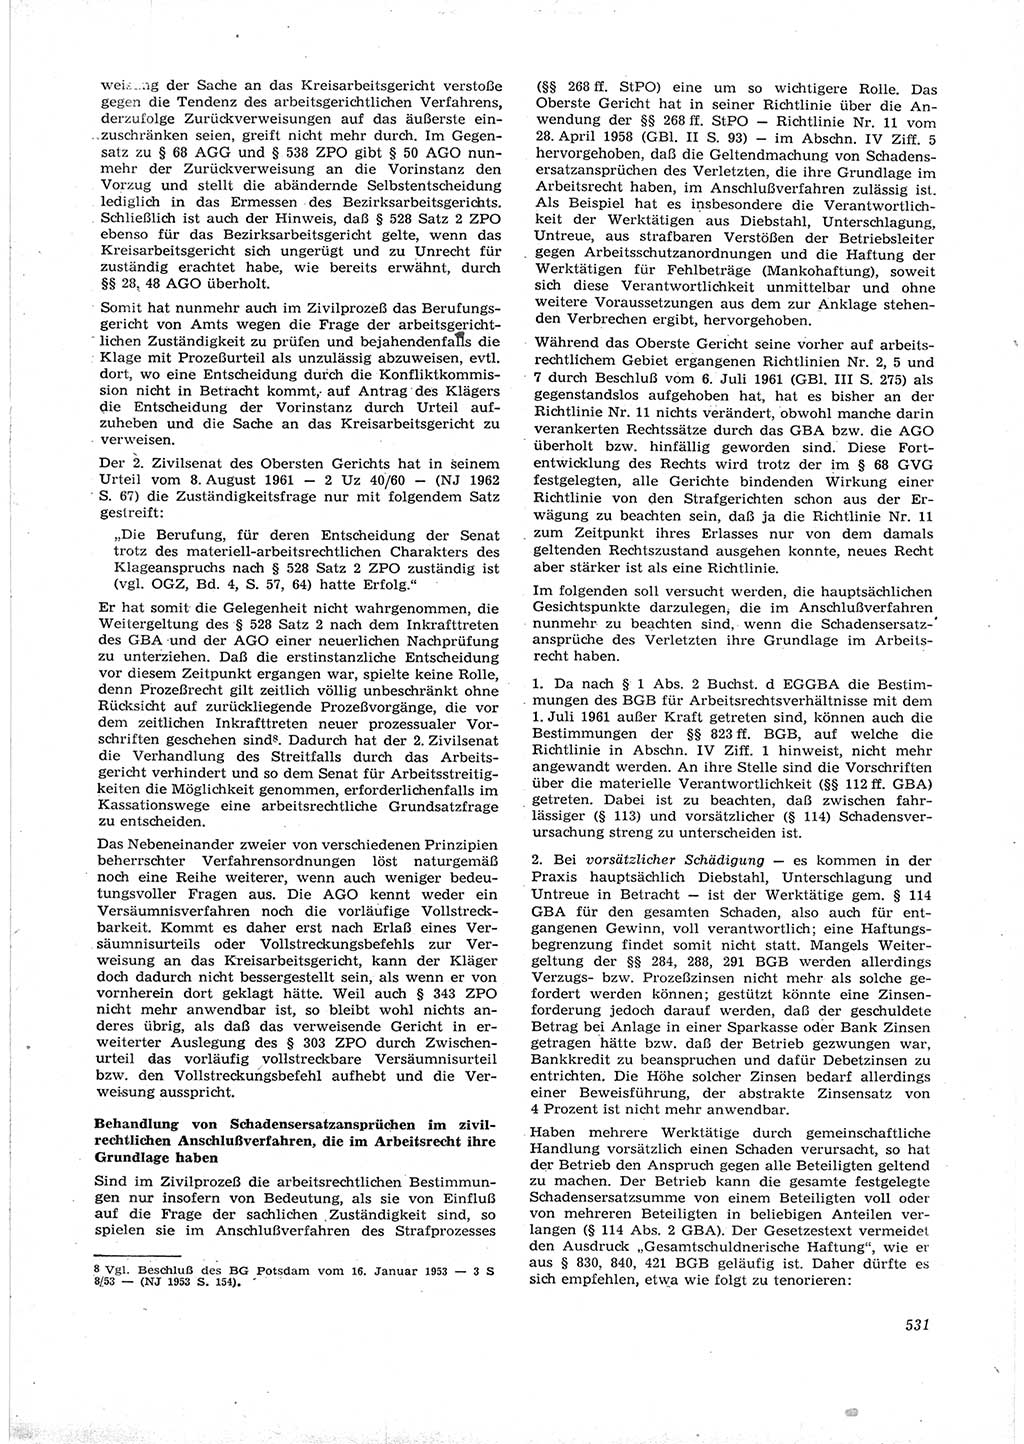 Neue Justiz (NJ), Zeitschrift für Recht und Rechtswissenschaft [Deutsche Demokratische Republik (DDR)], 16. Jahrgang 1962, Seite 531 (NJ DDR 1962, S. 531)